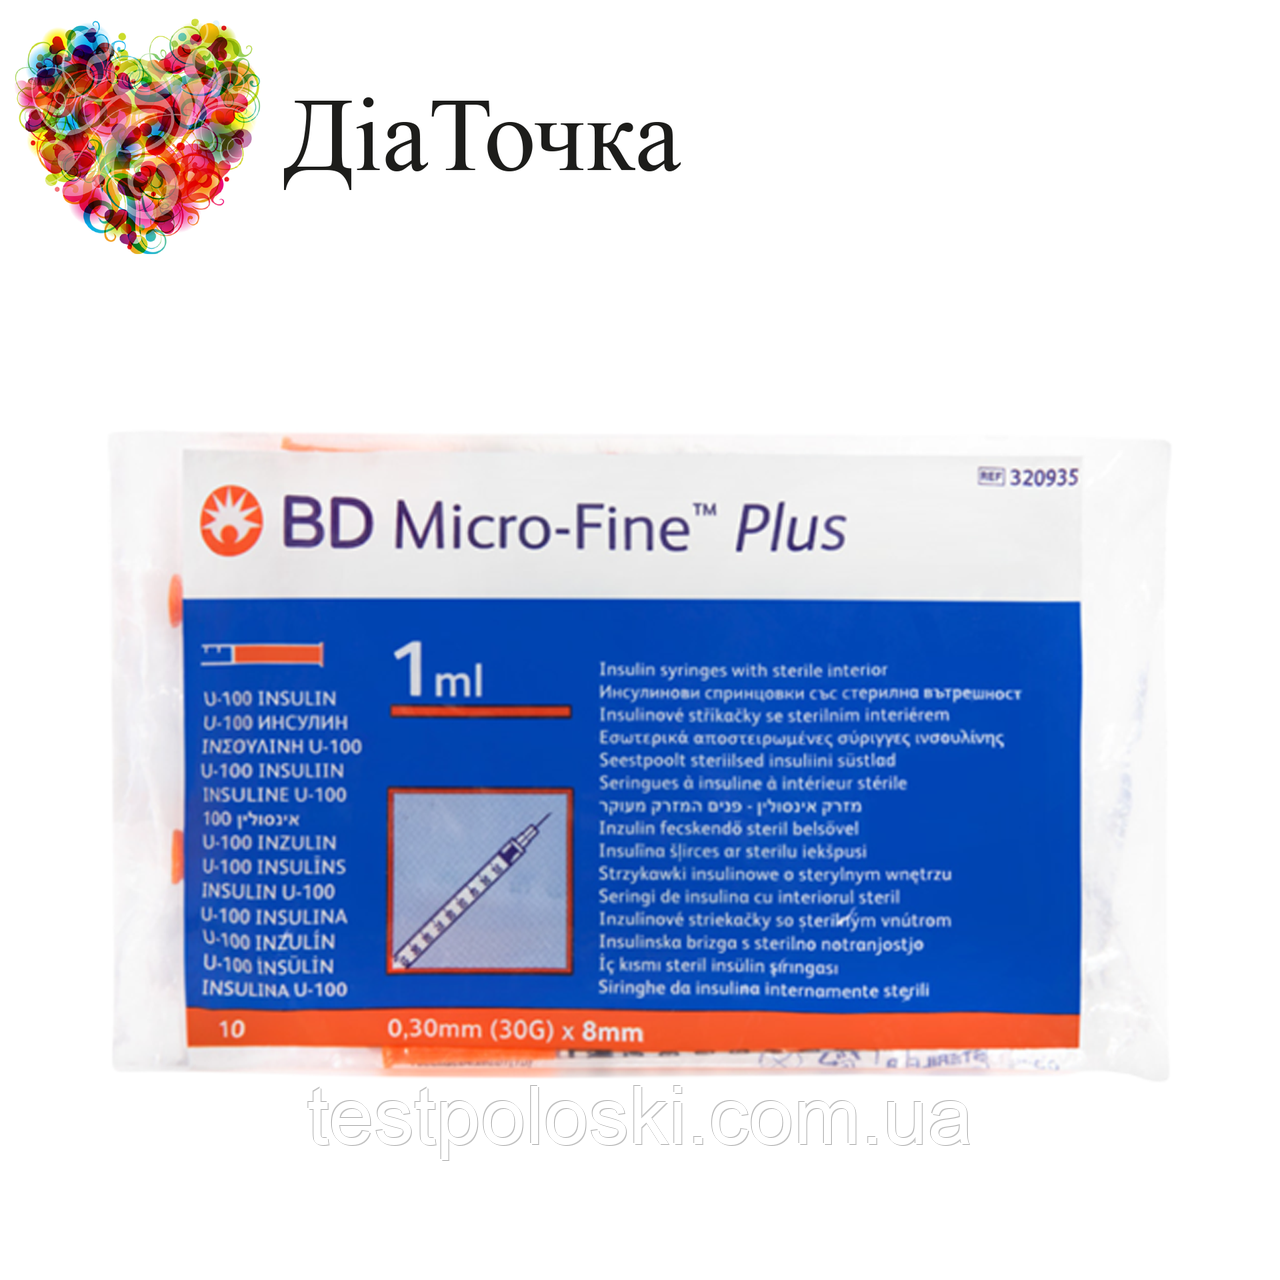 Шприци БД Мікро Файн Плюс U-100 (BD Micro Fine Plus) 1 мл — 10 штук